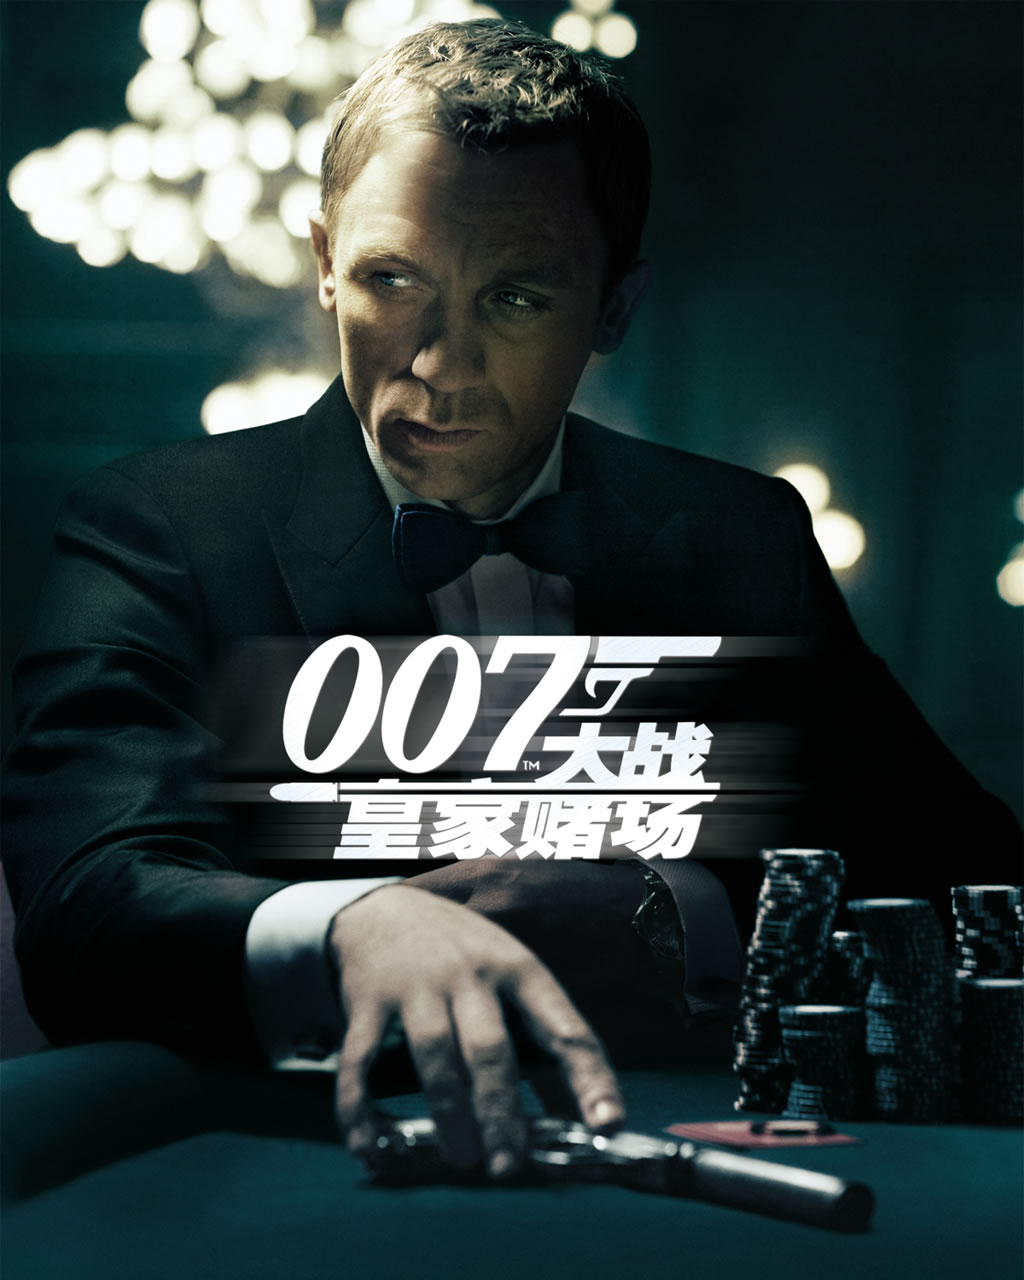 007 系列